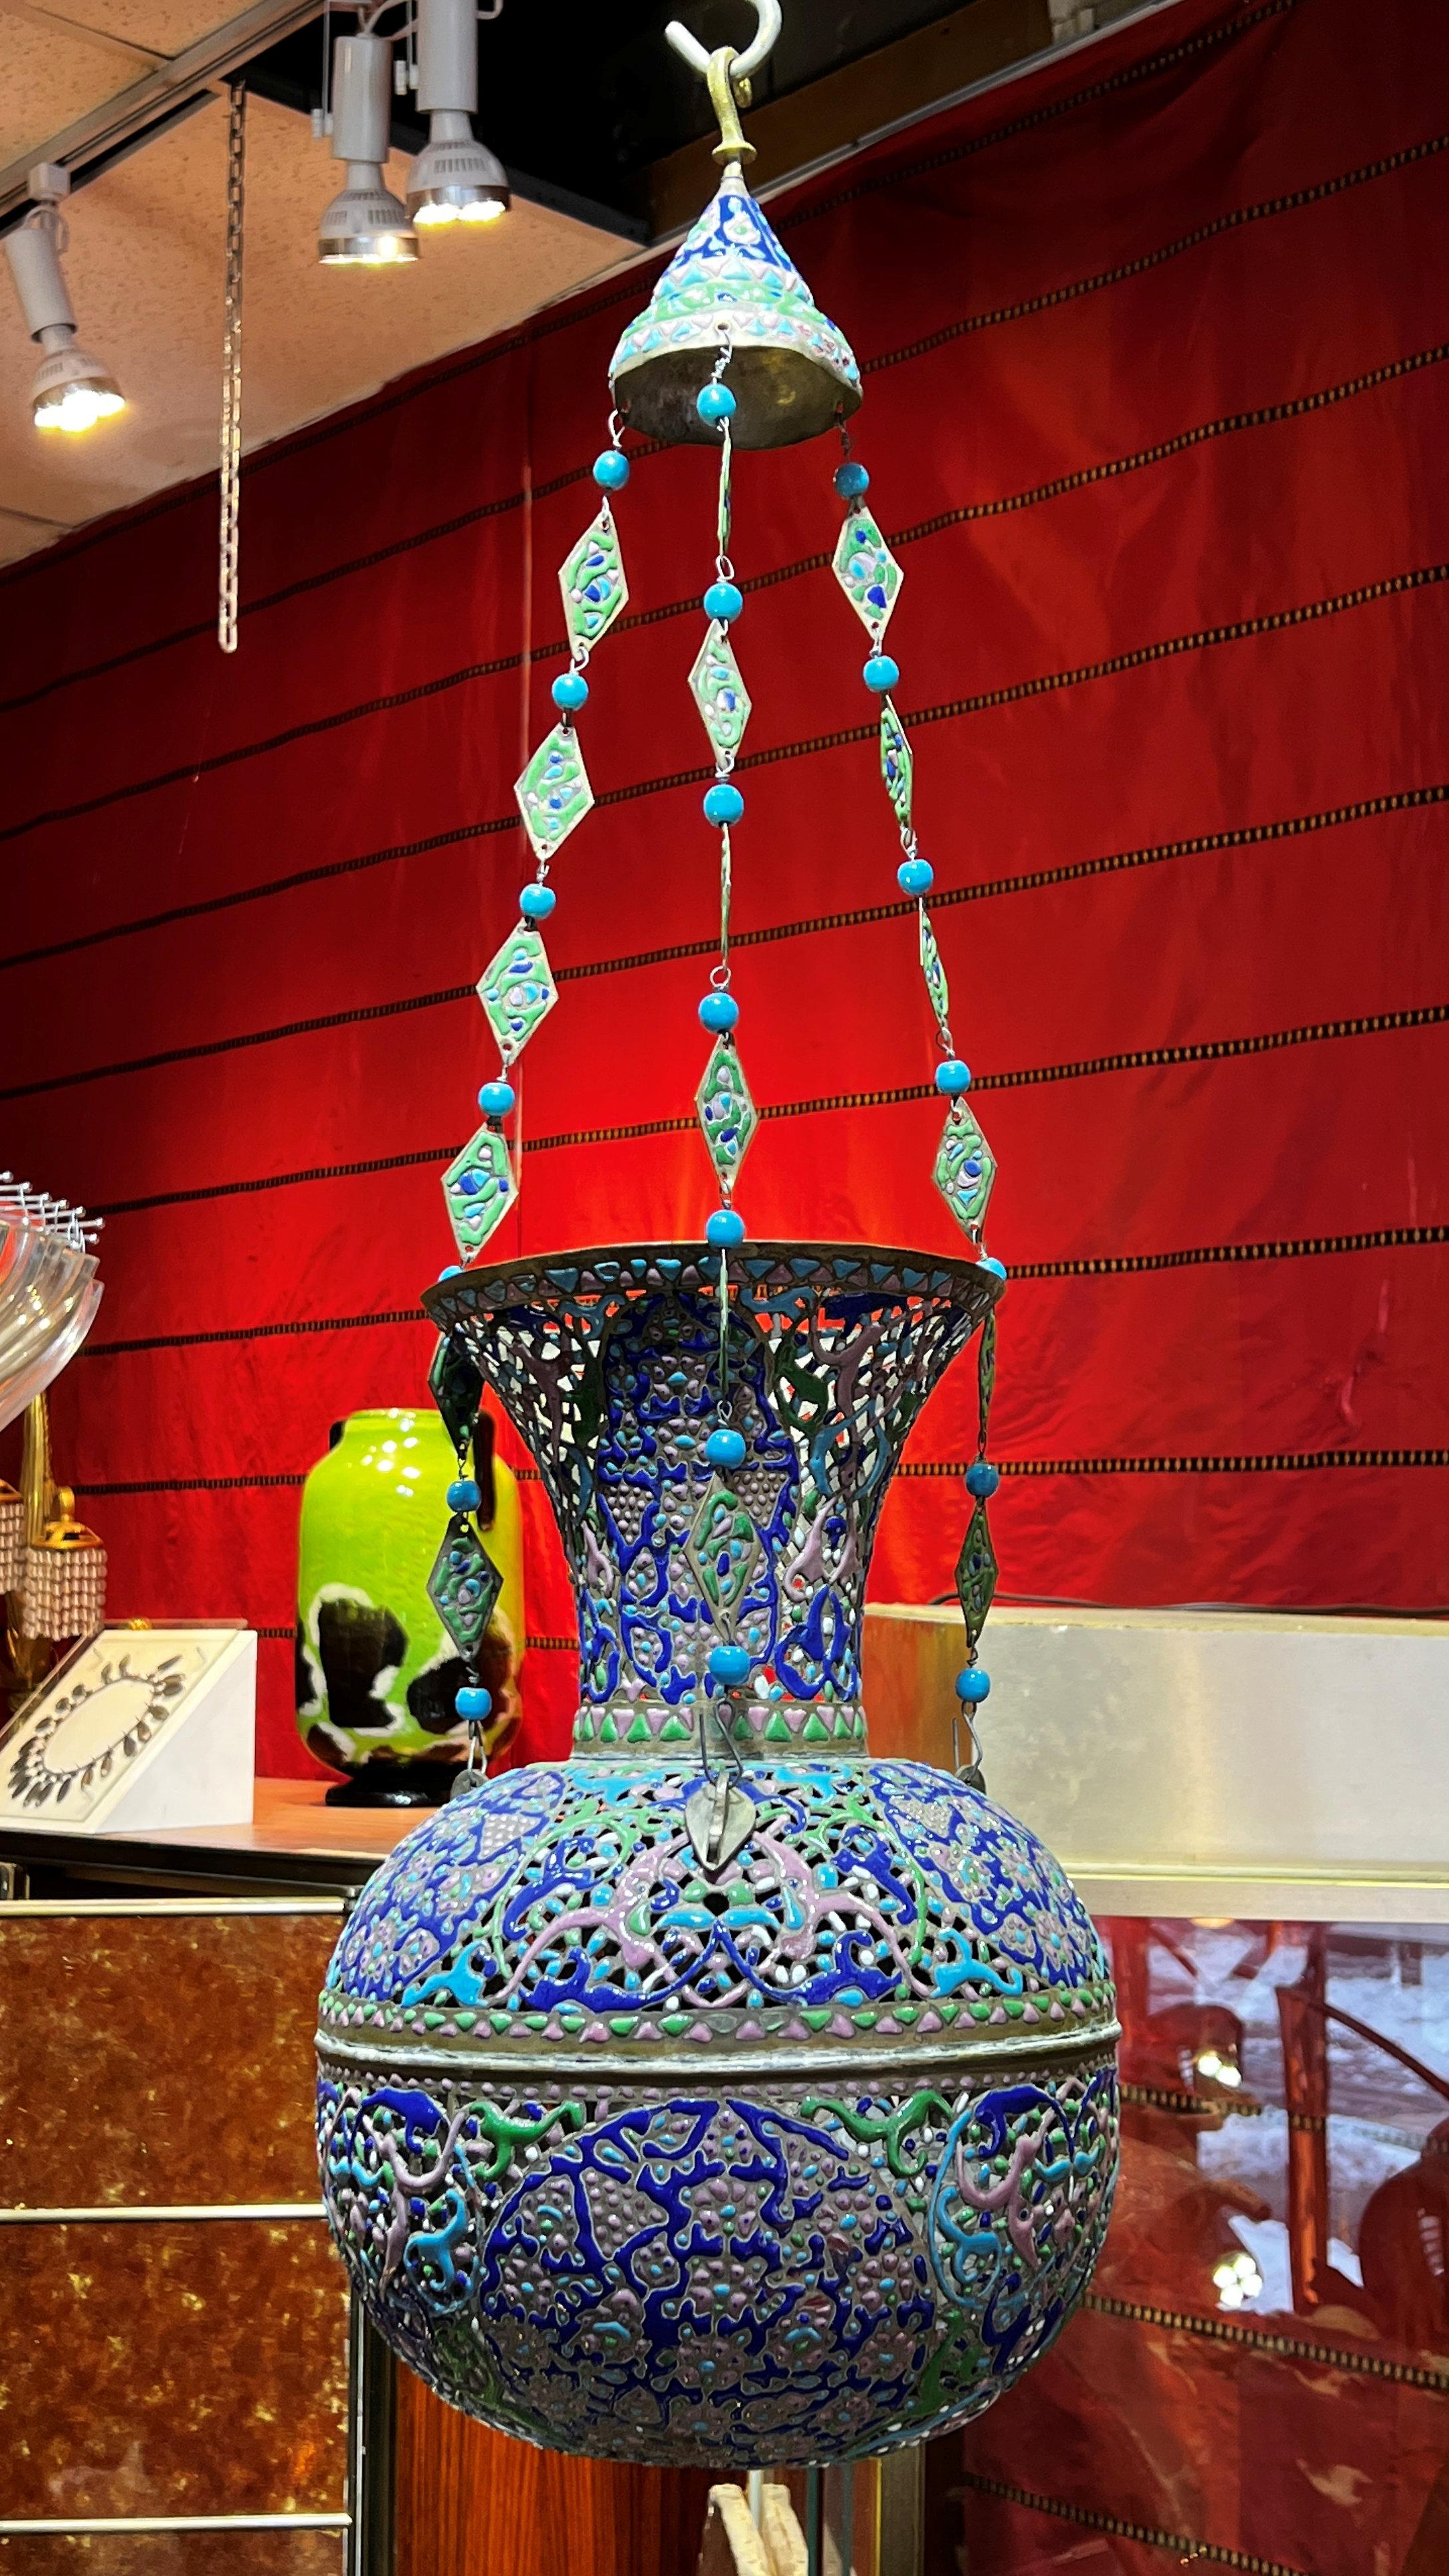 Notre belle lampe mosquée en cuivre se distingue par sa forme réticulée et ses ravissants motifs d'arabesques émaillées en bleu, vert lime et rose, avec ses chaînes de suspension originales formées de perles bleues et de métal émaillé en forme de